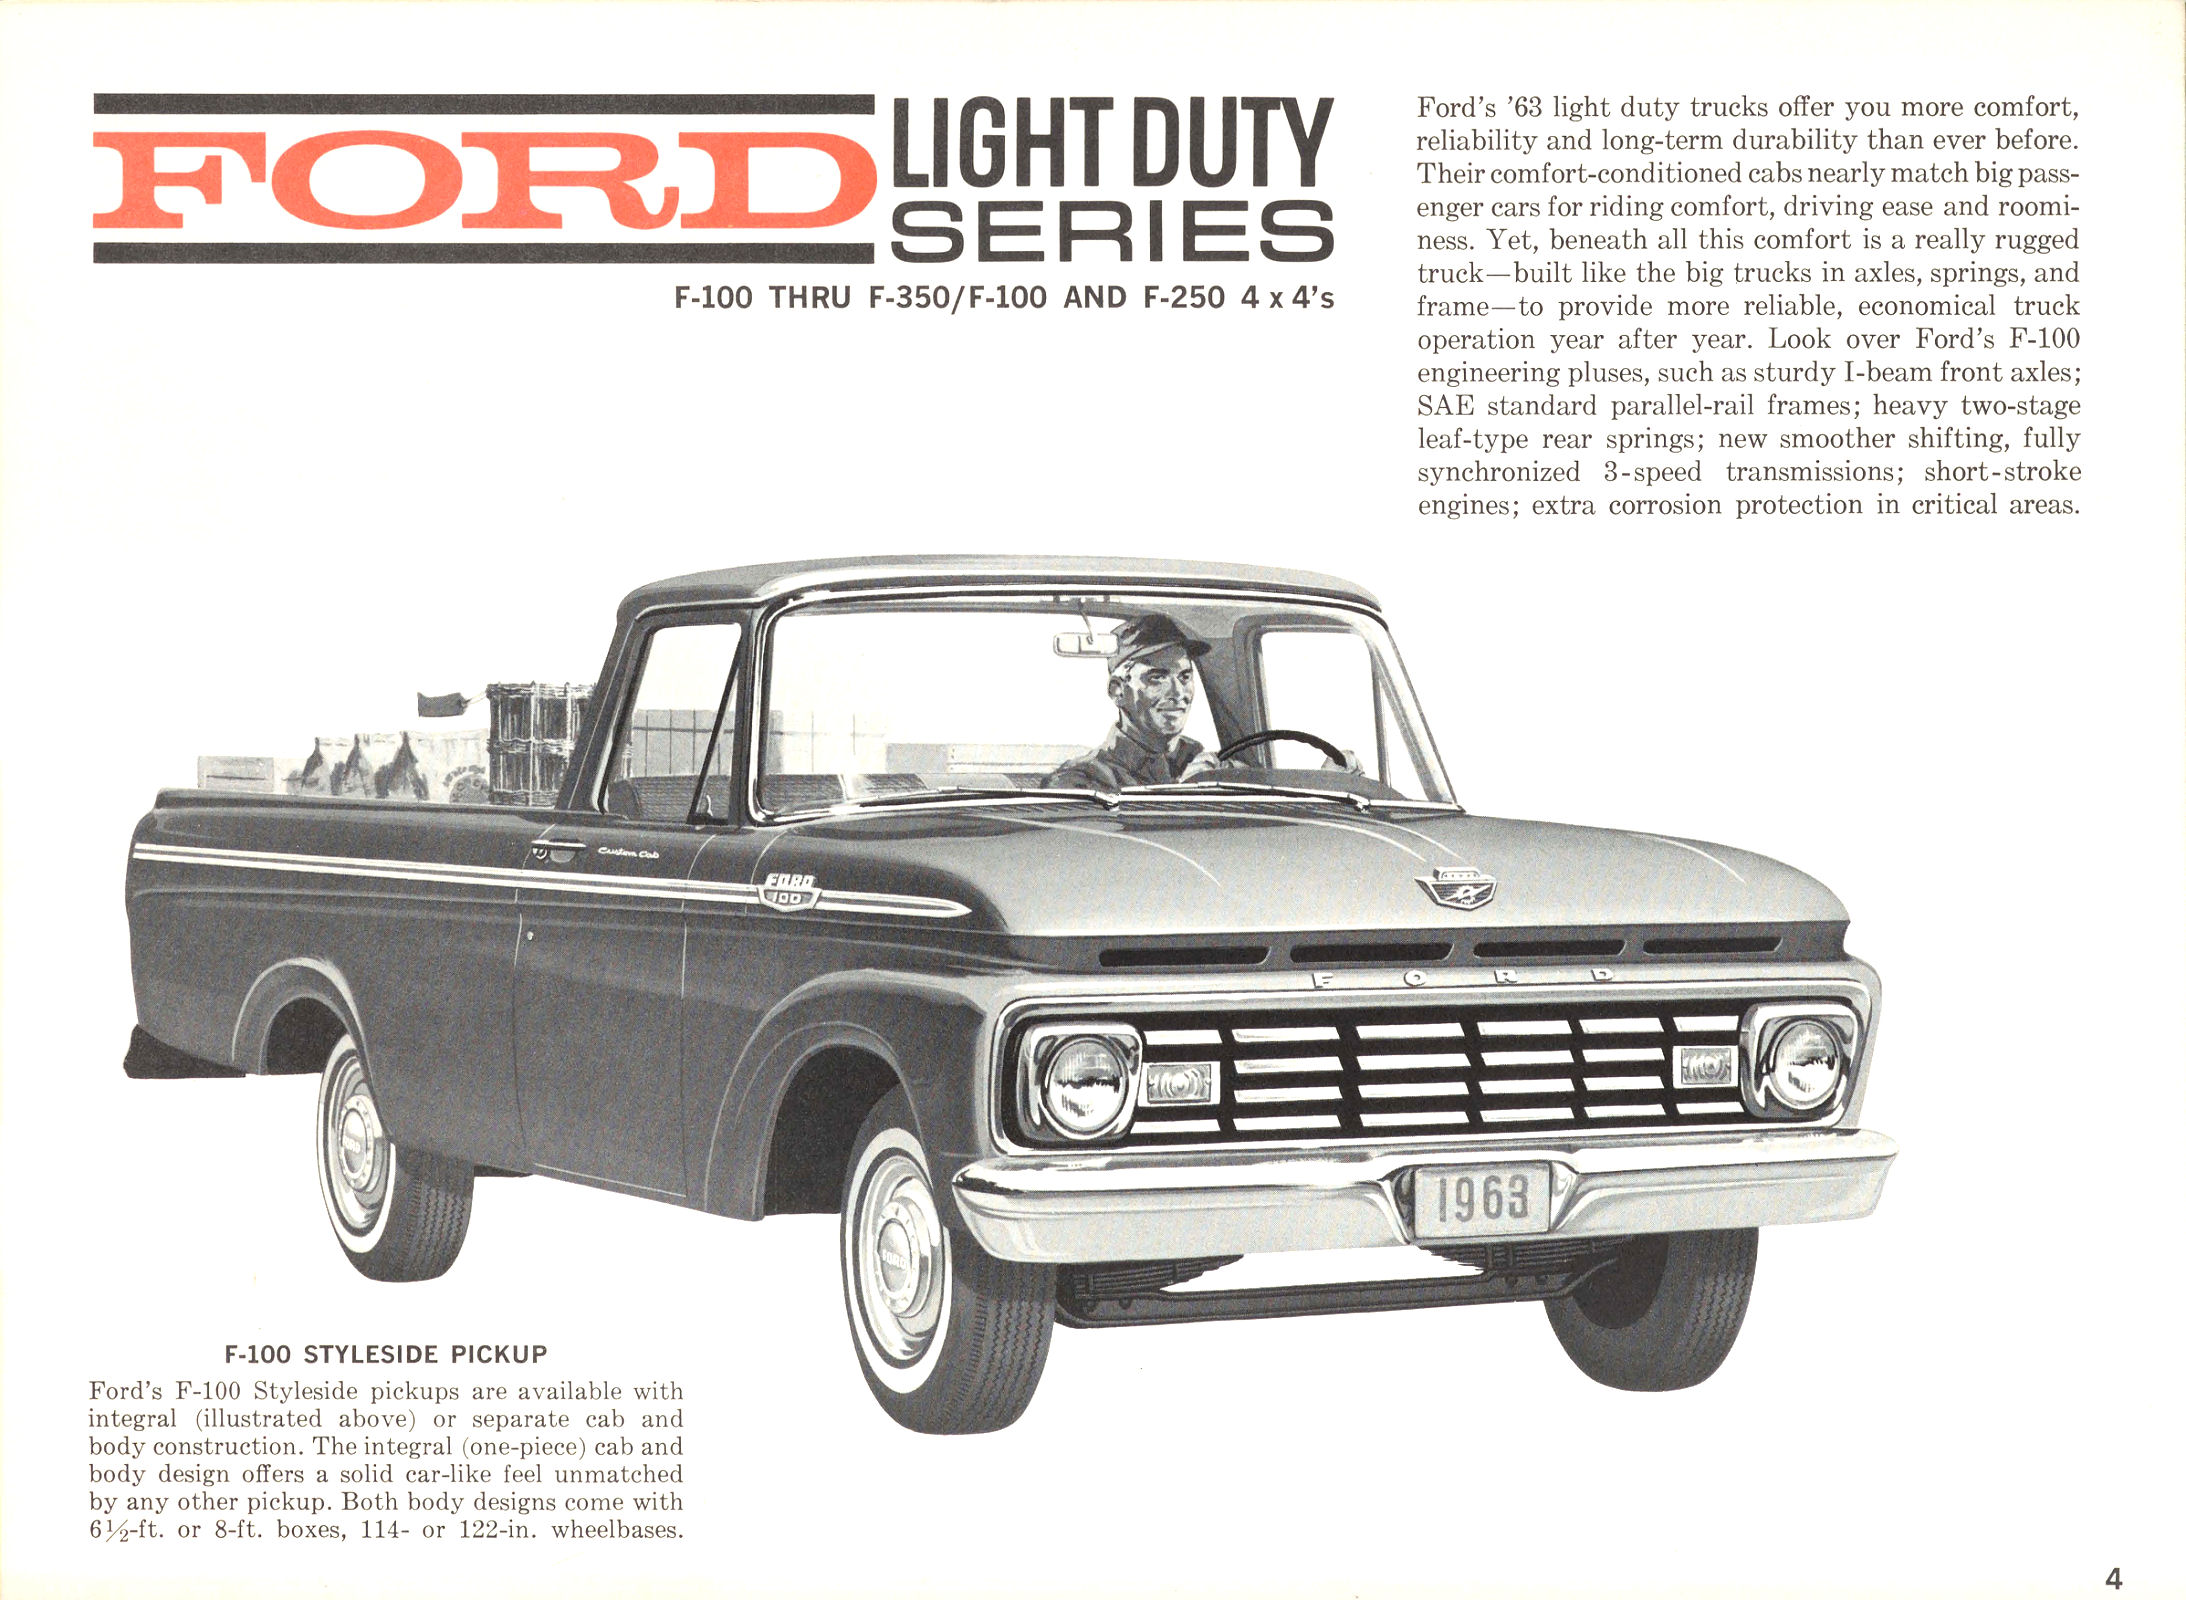 1963 Ford Trucks-04